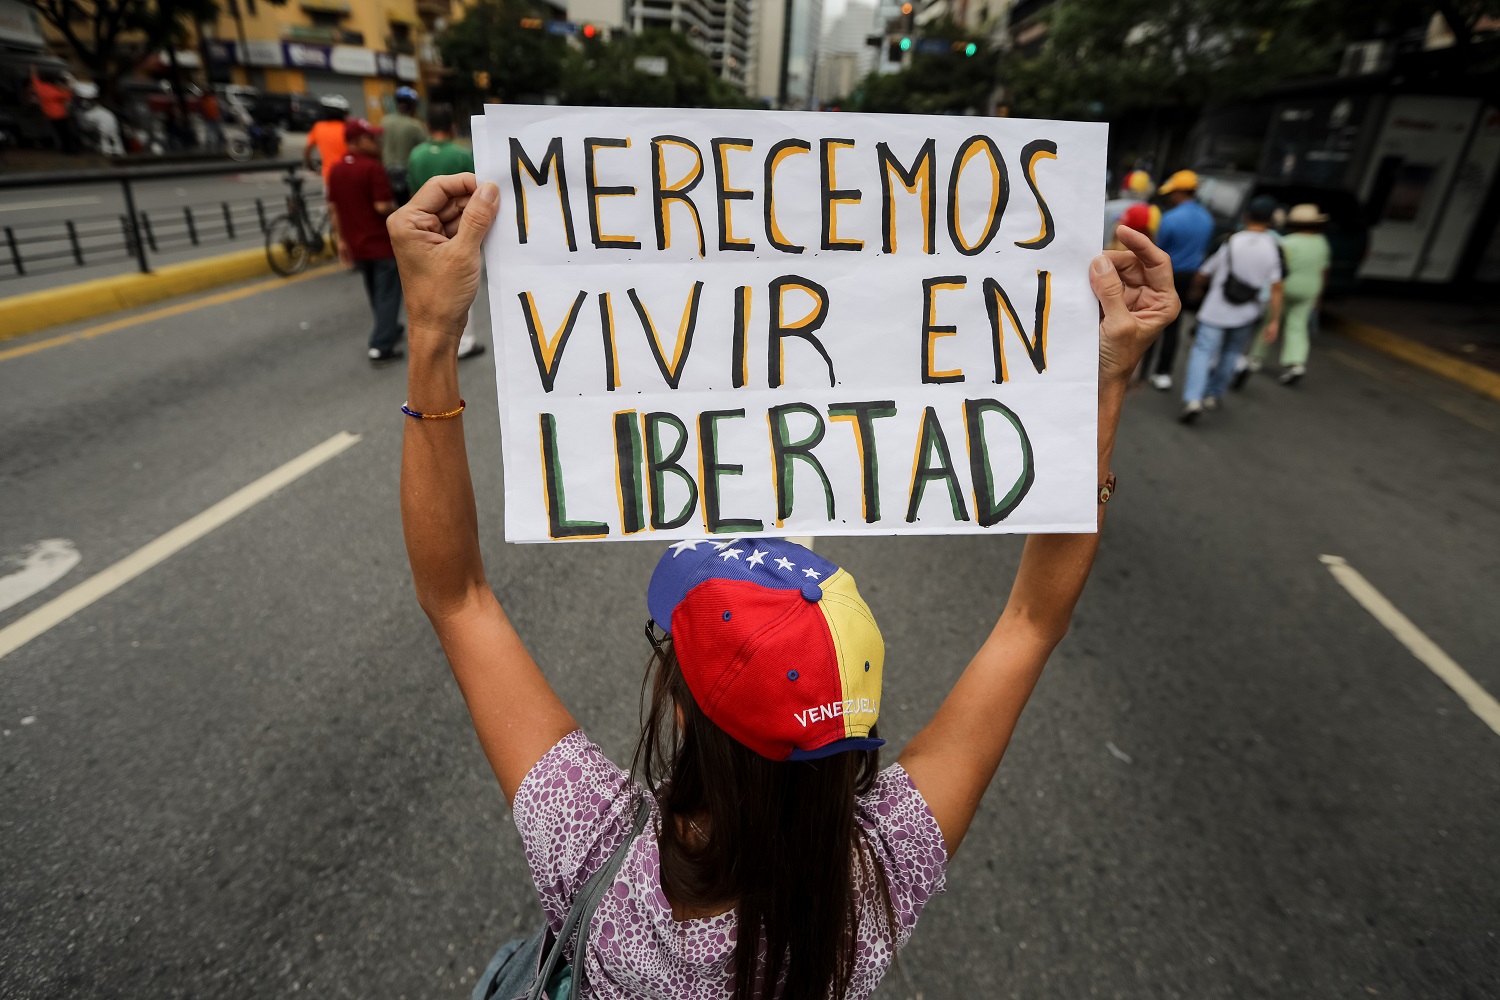 Asociaciones de exalumnos de intercambio piden libertad y democracia en Venezuela (Comunicado)